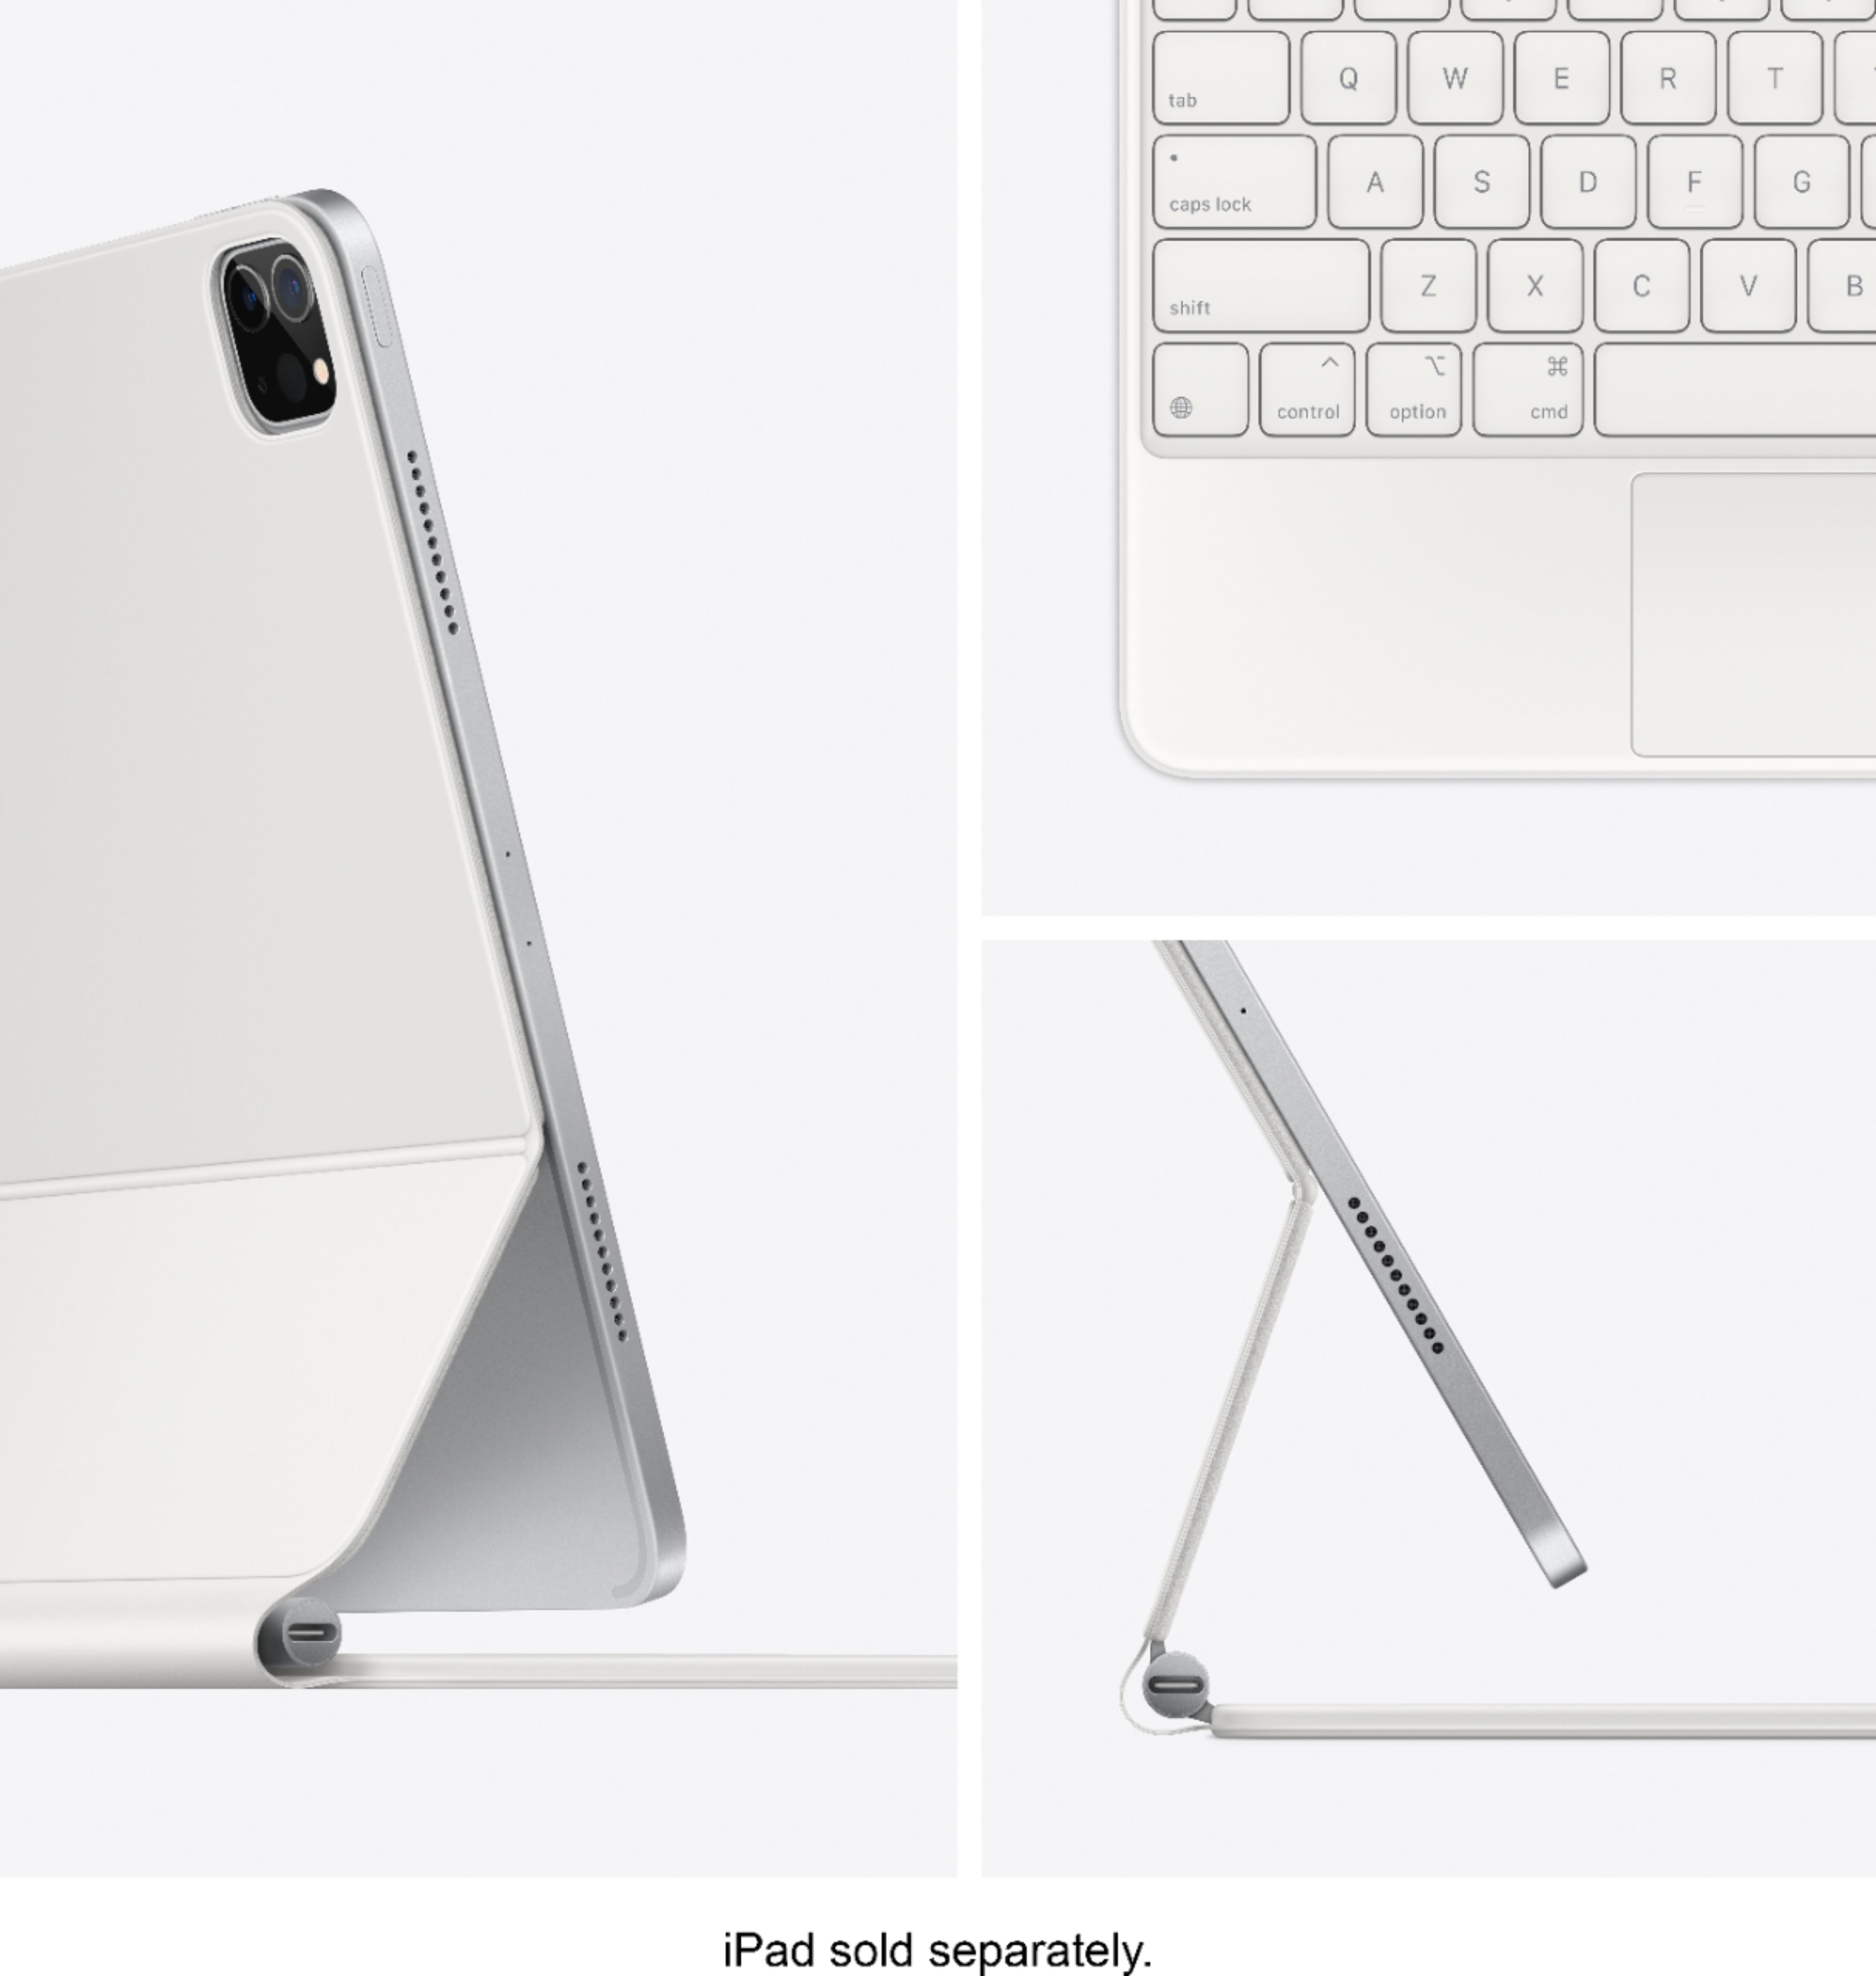 1,36 kg pour l'iPad Pro 12,9 pouces et son Magic Keyboard